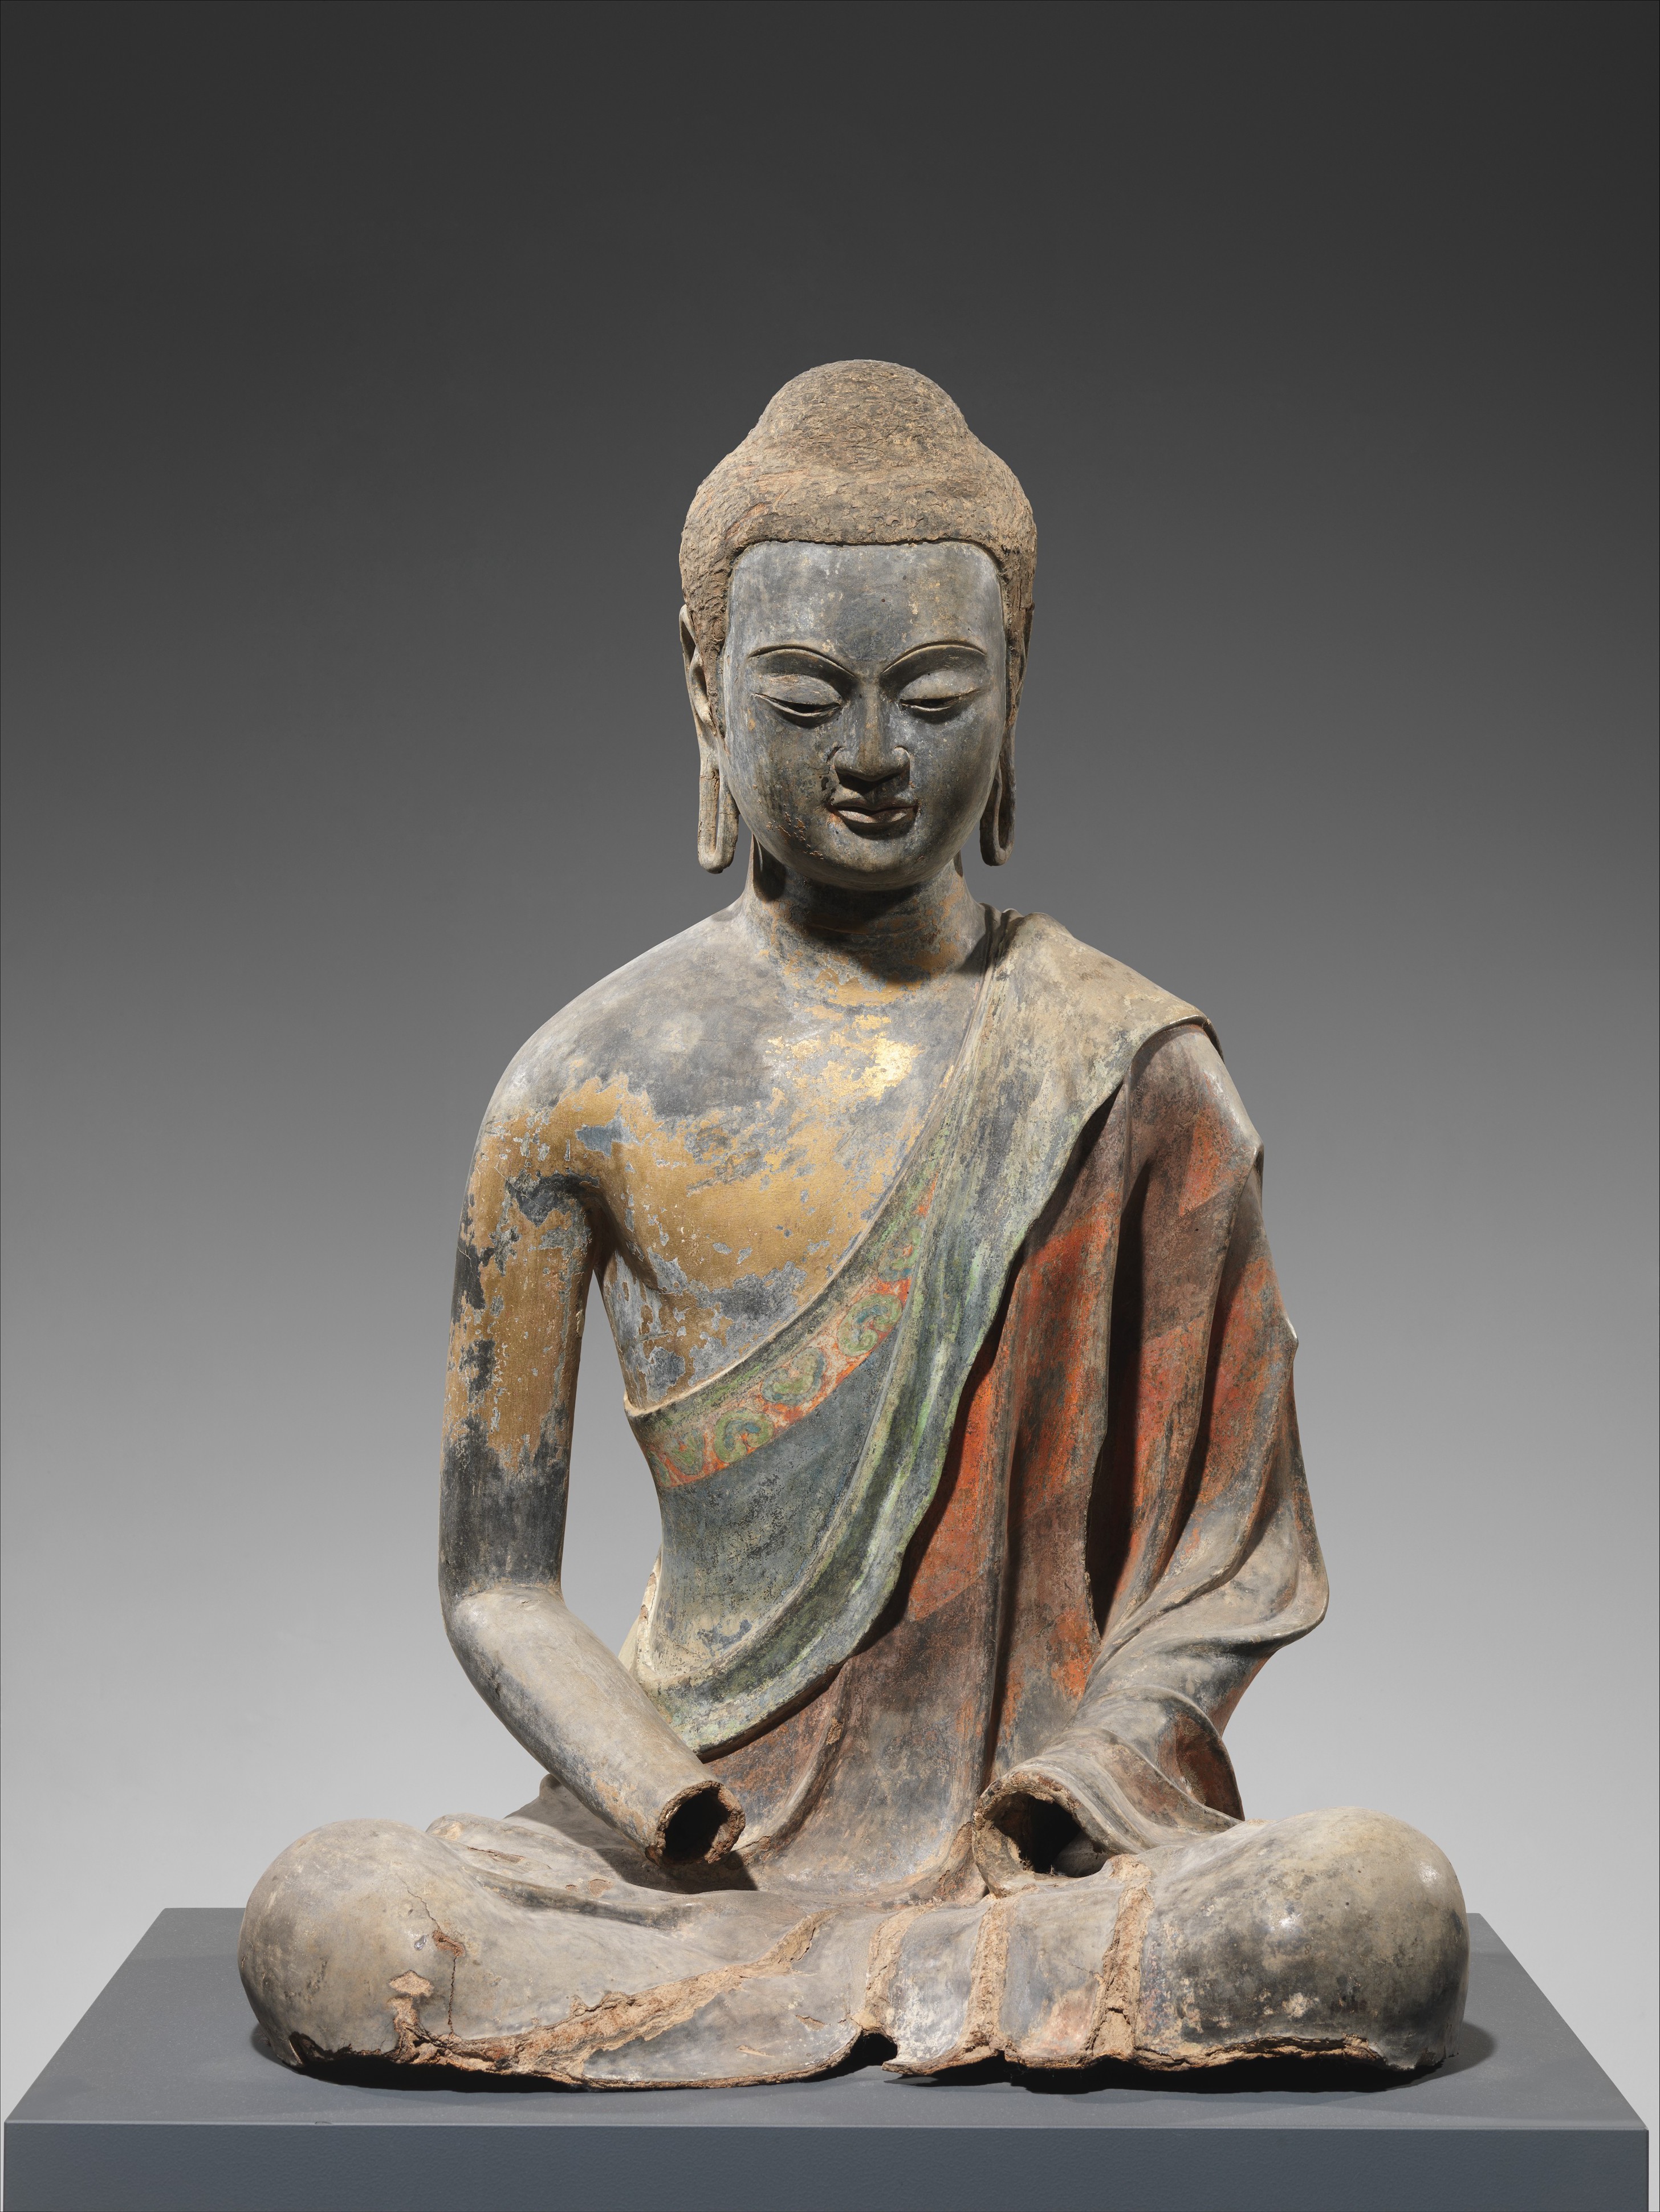 Chinese Buddhist sculpture - Wikipedia